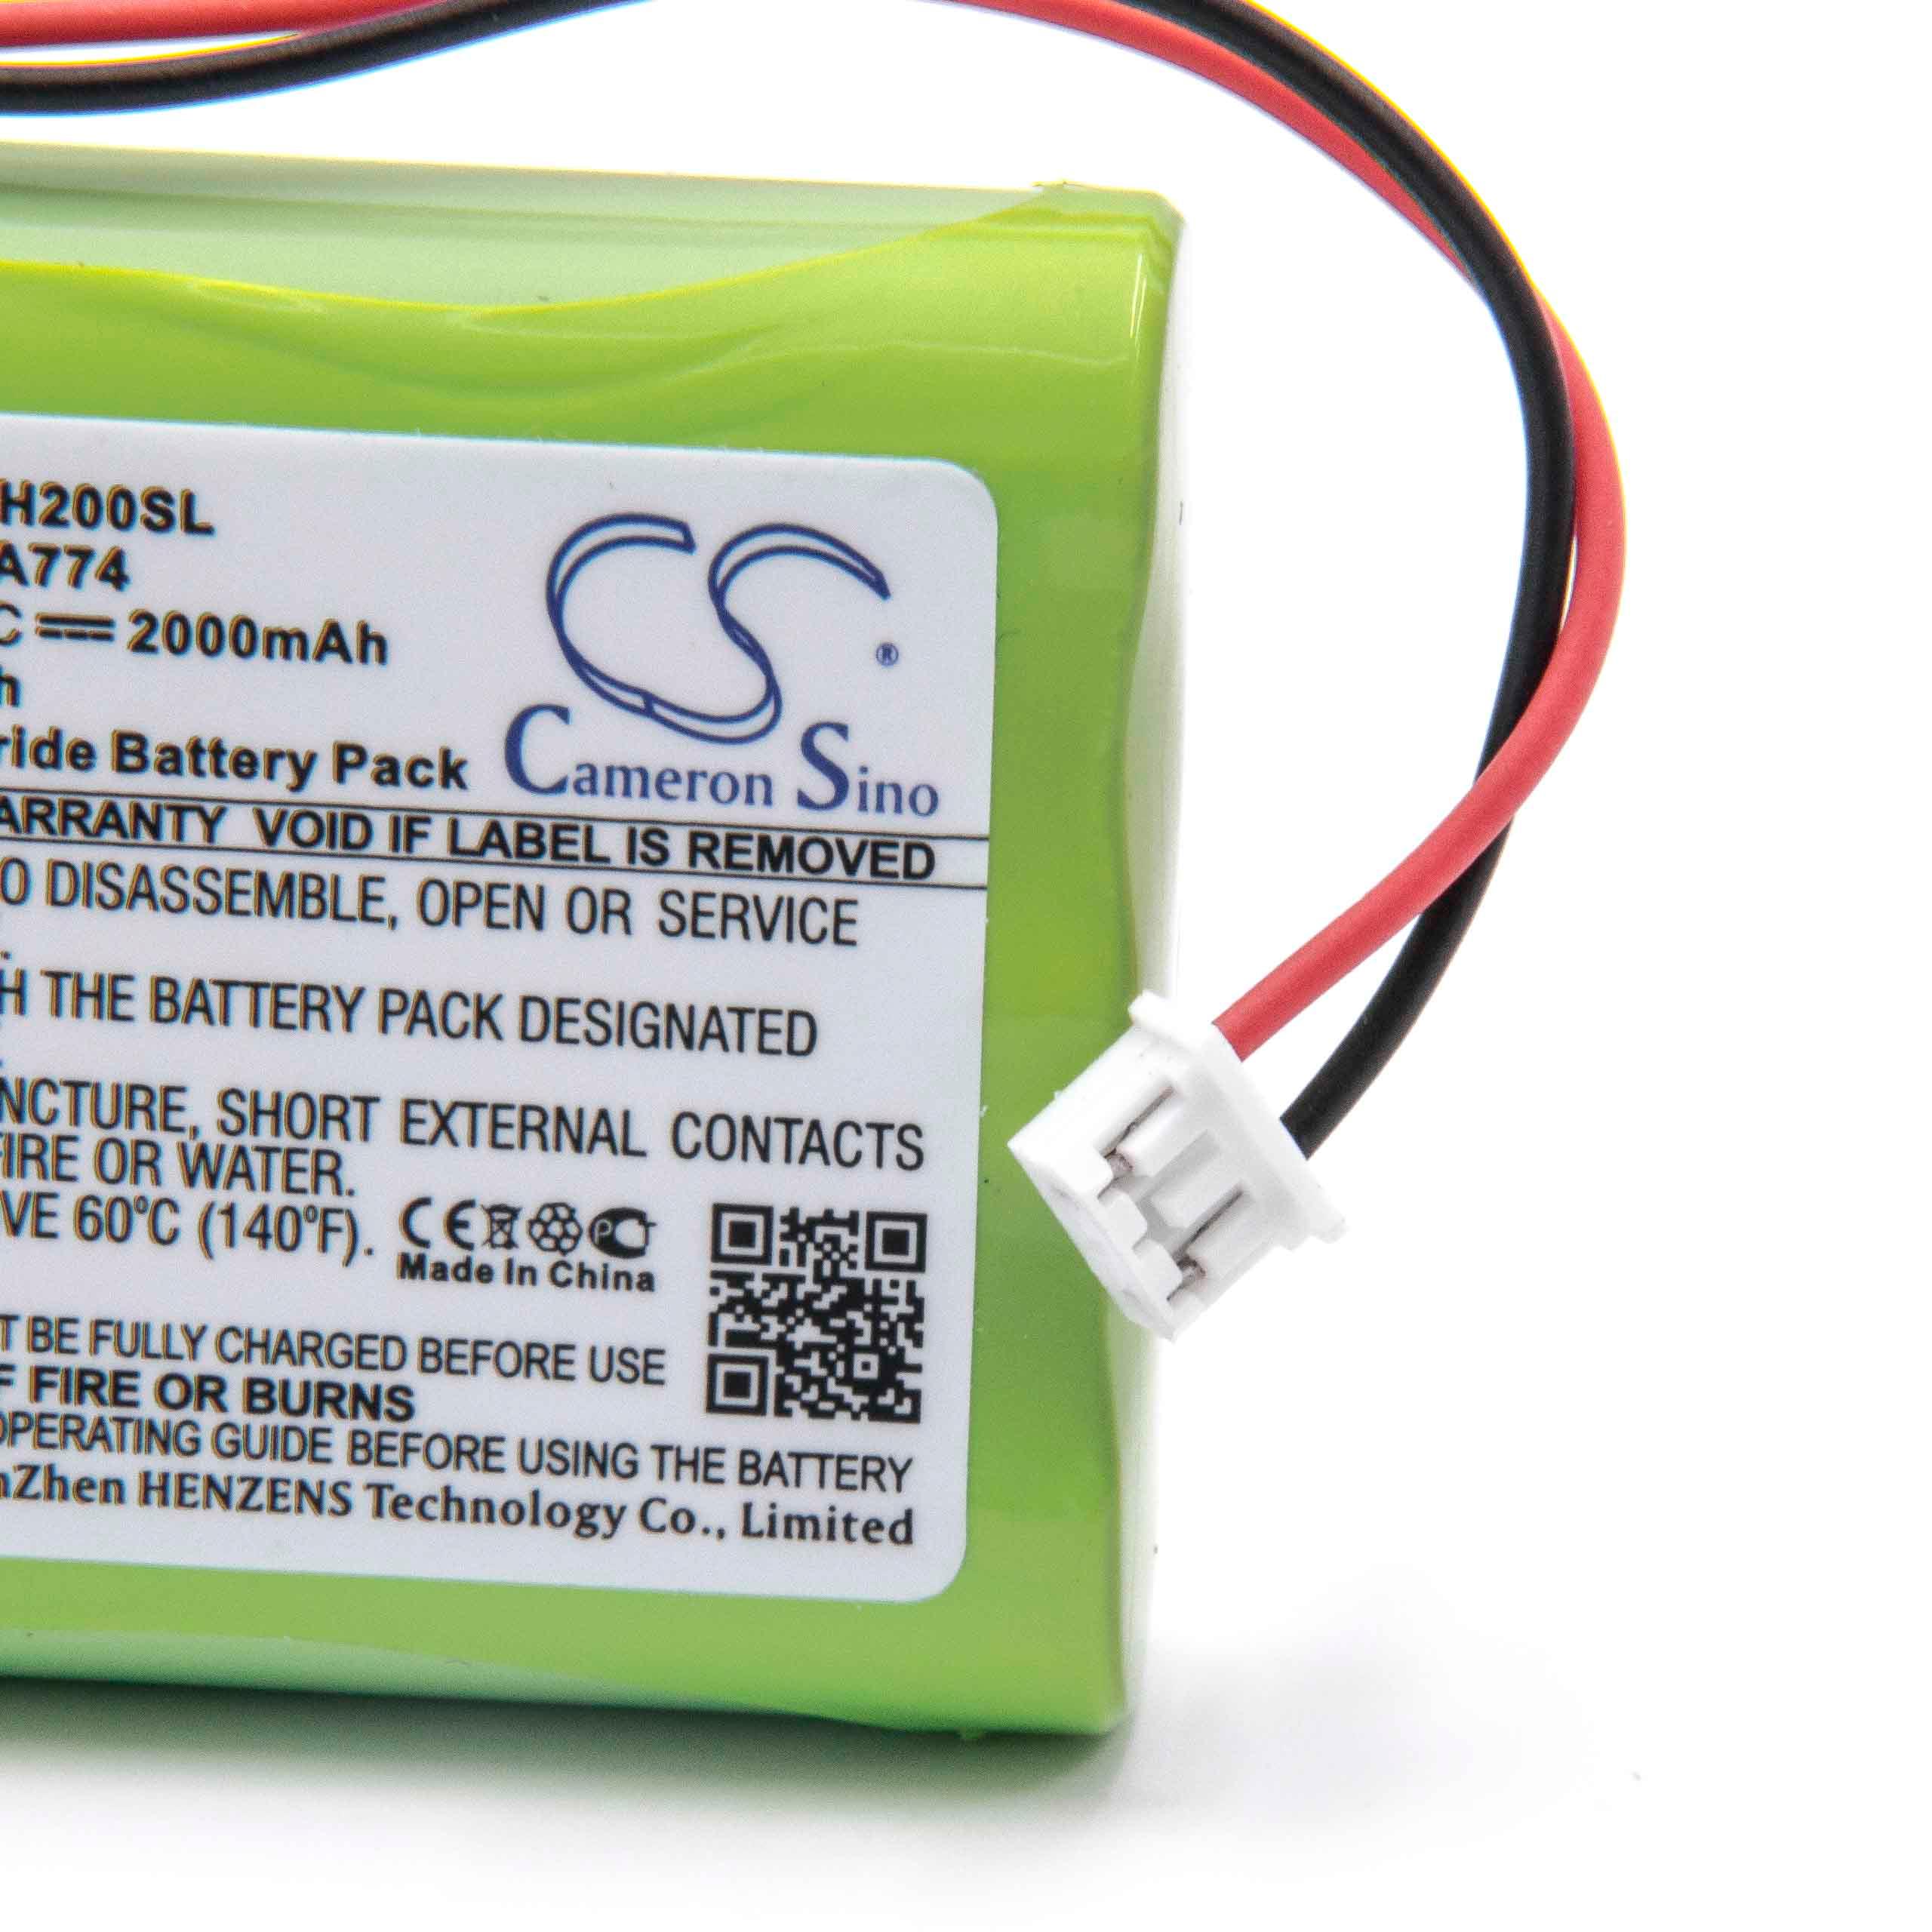 Batterie remplace TPI A007, A774, 160AAH3BML pour outil de mesure - 2000mAh 3,6V NiMH